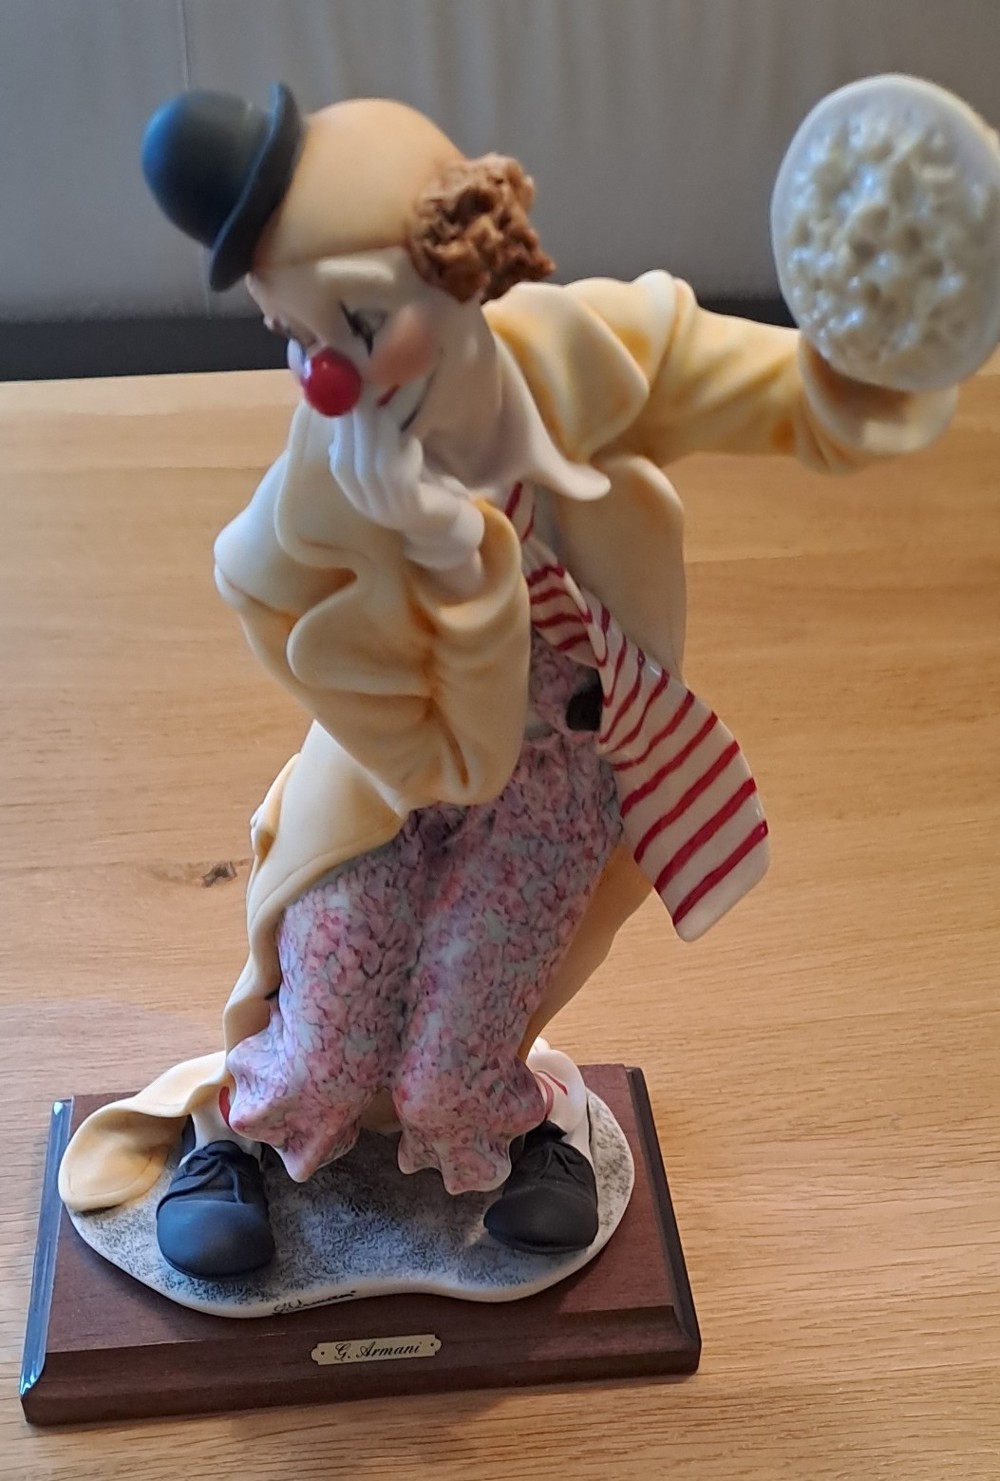 G. Armani Clown Figur